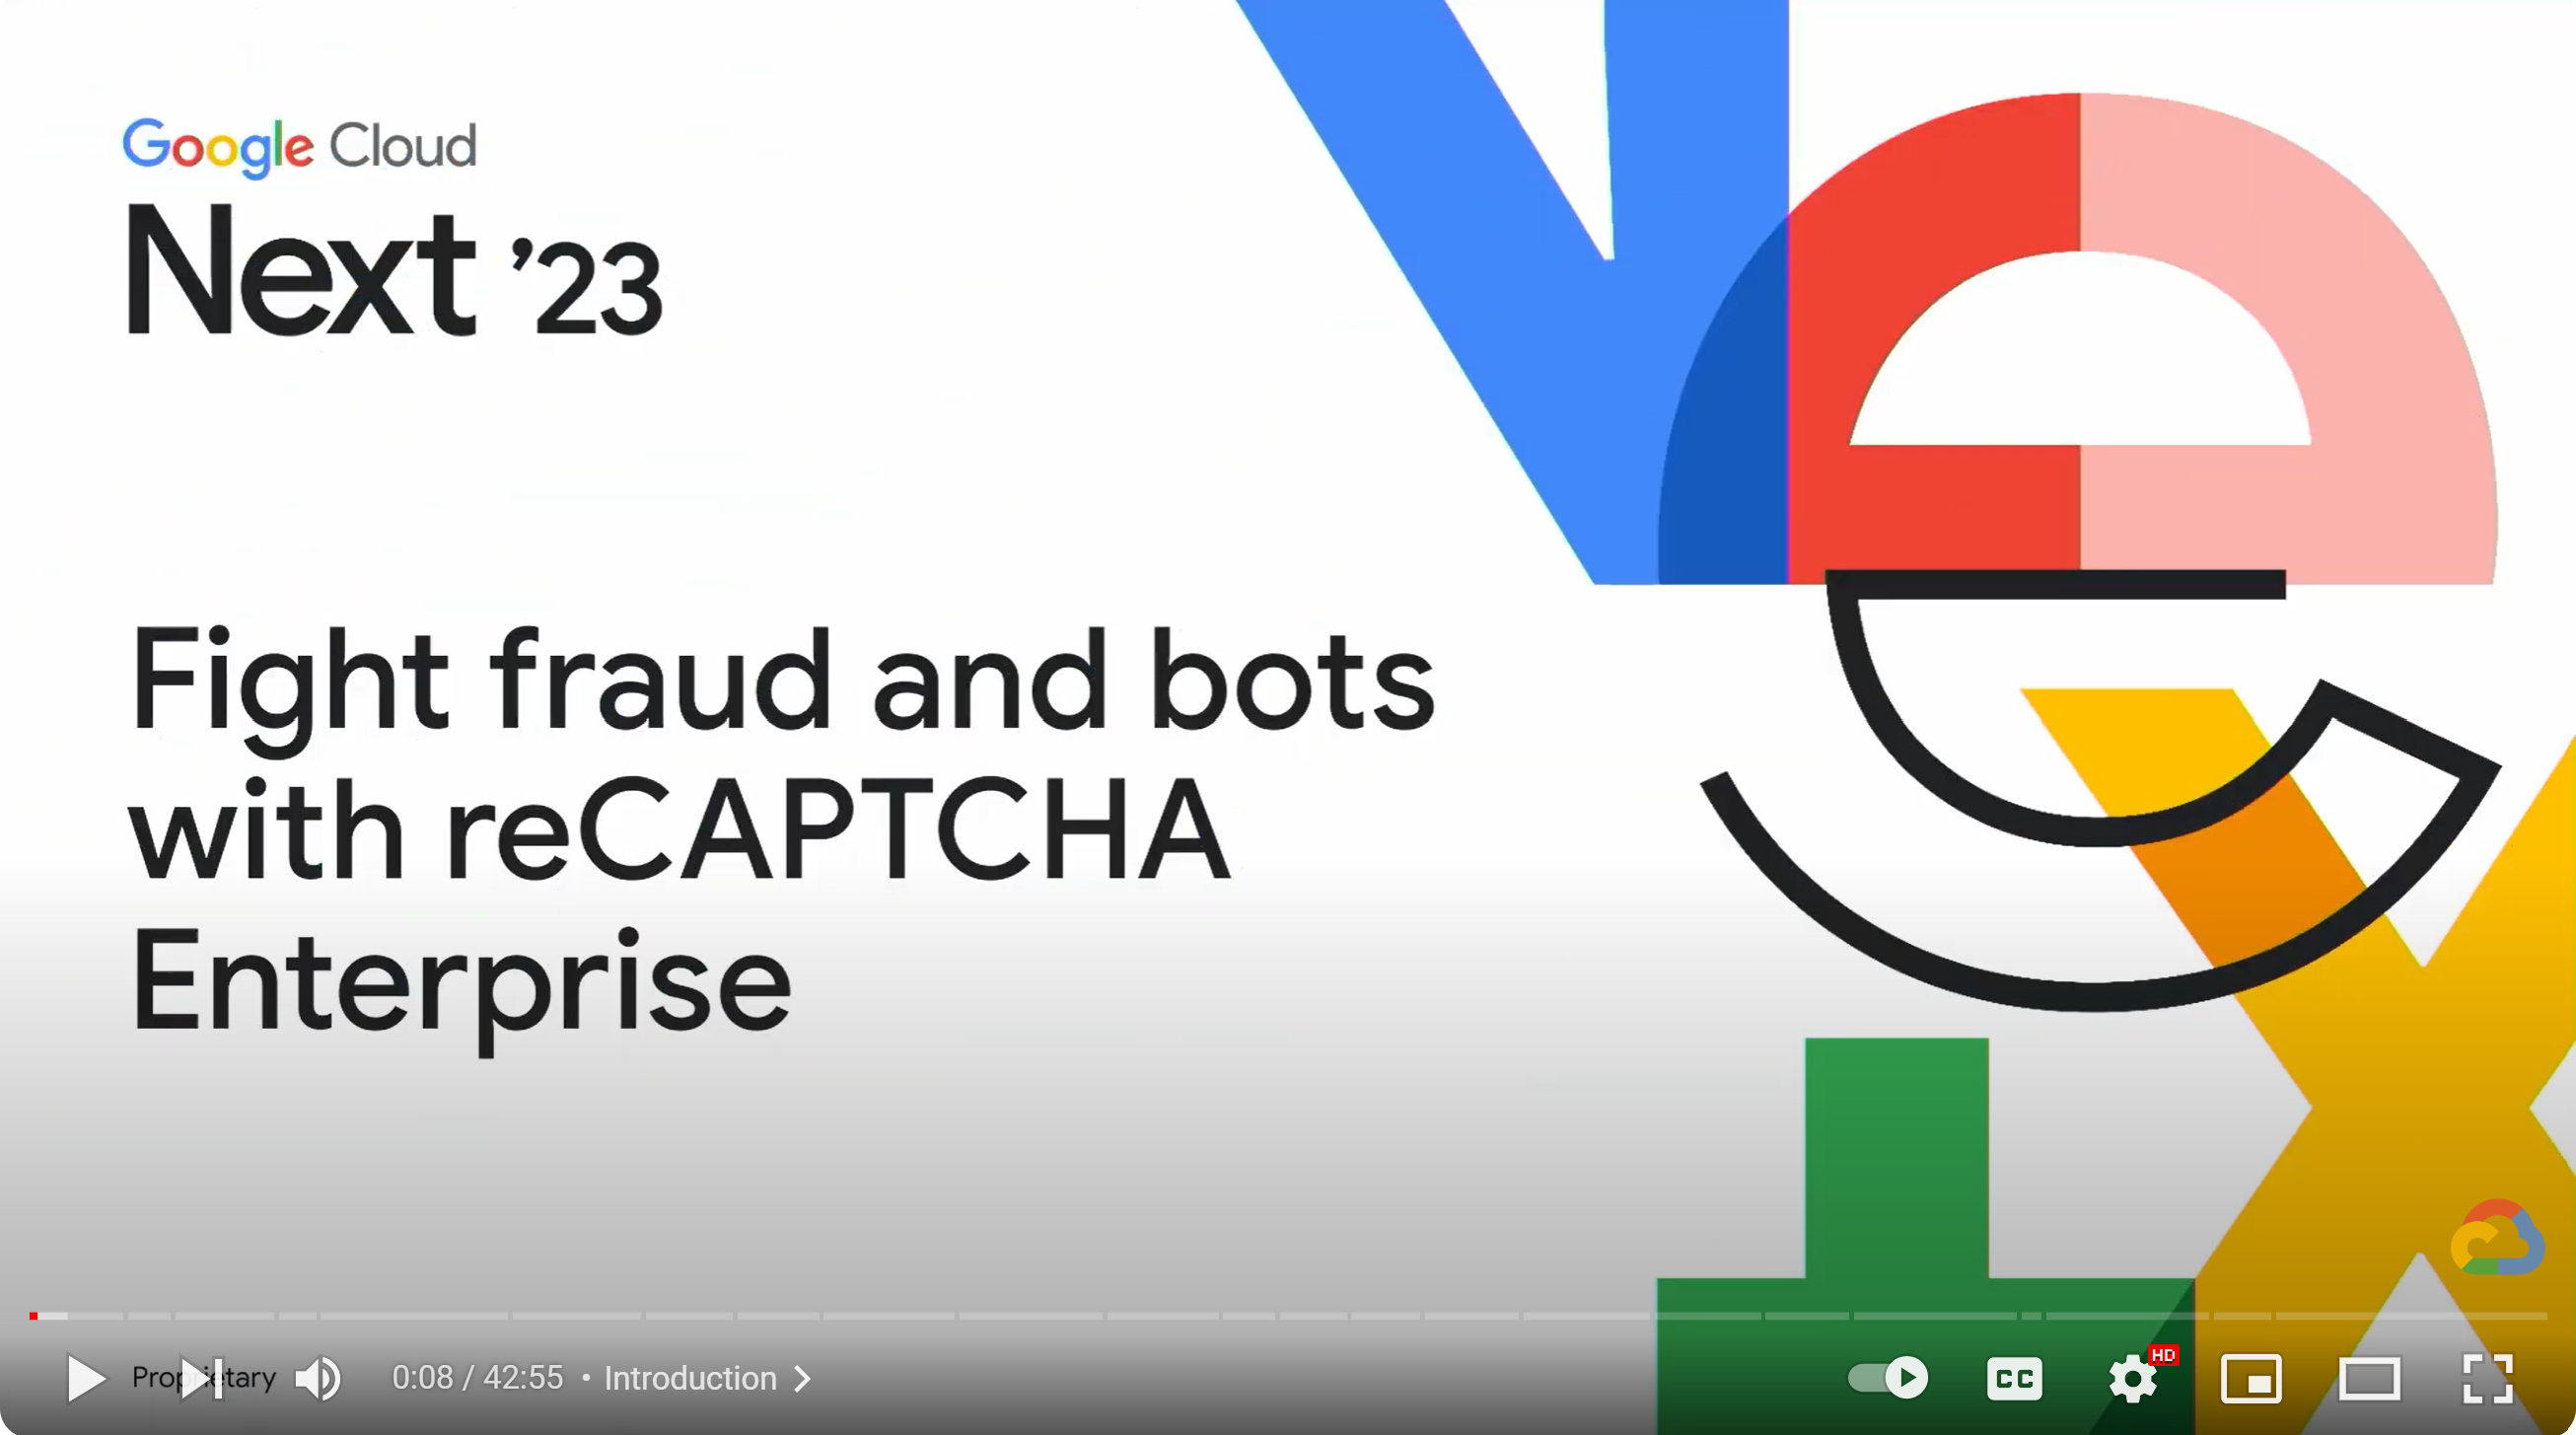 Hintergrundinformationen zu reCAPTCHA Enterprise mit Hintergrundinformationen zur Google Cloud Next'23